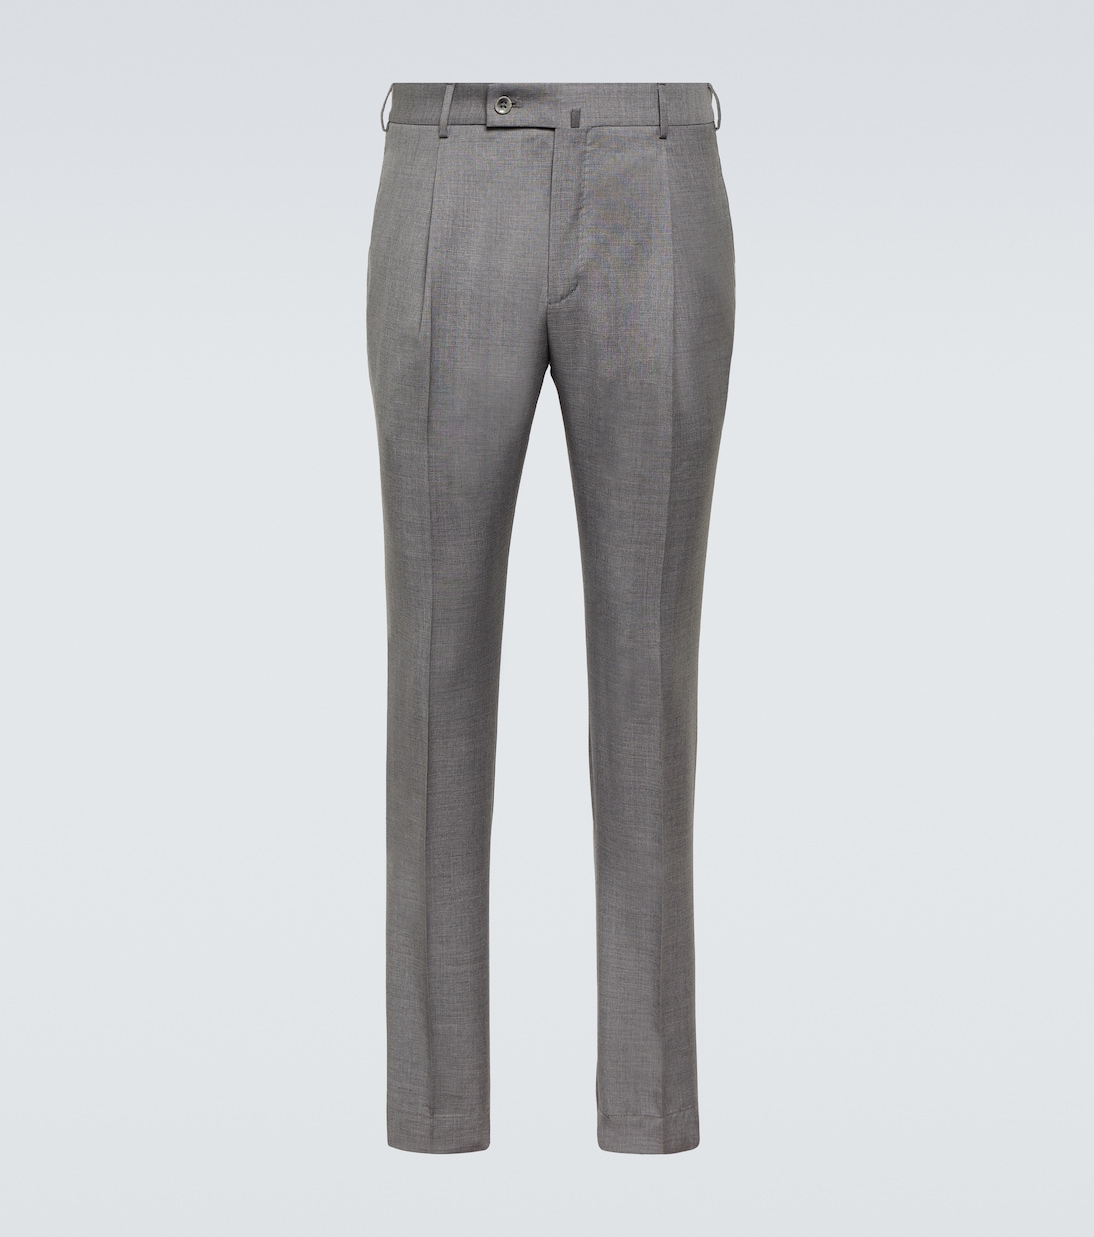 Узкие брюки из натуральной шерсти Incotex, серый узкие брюки из натуральной шерсти ami paris серый